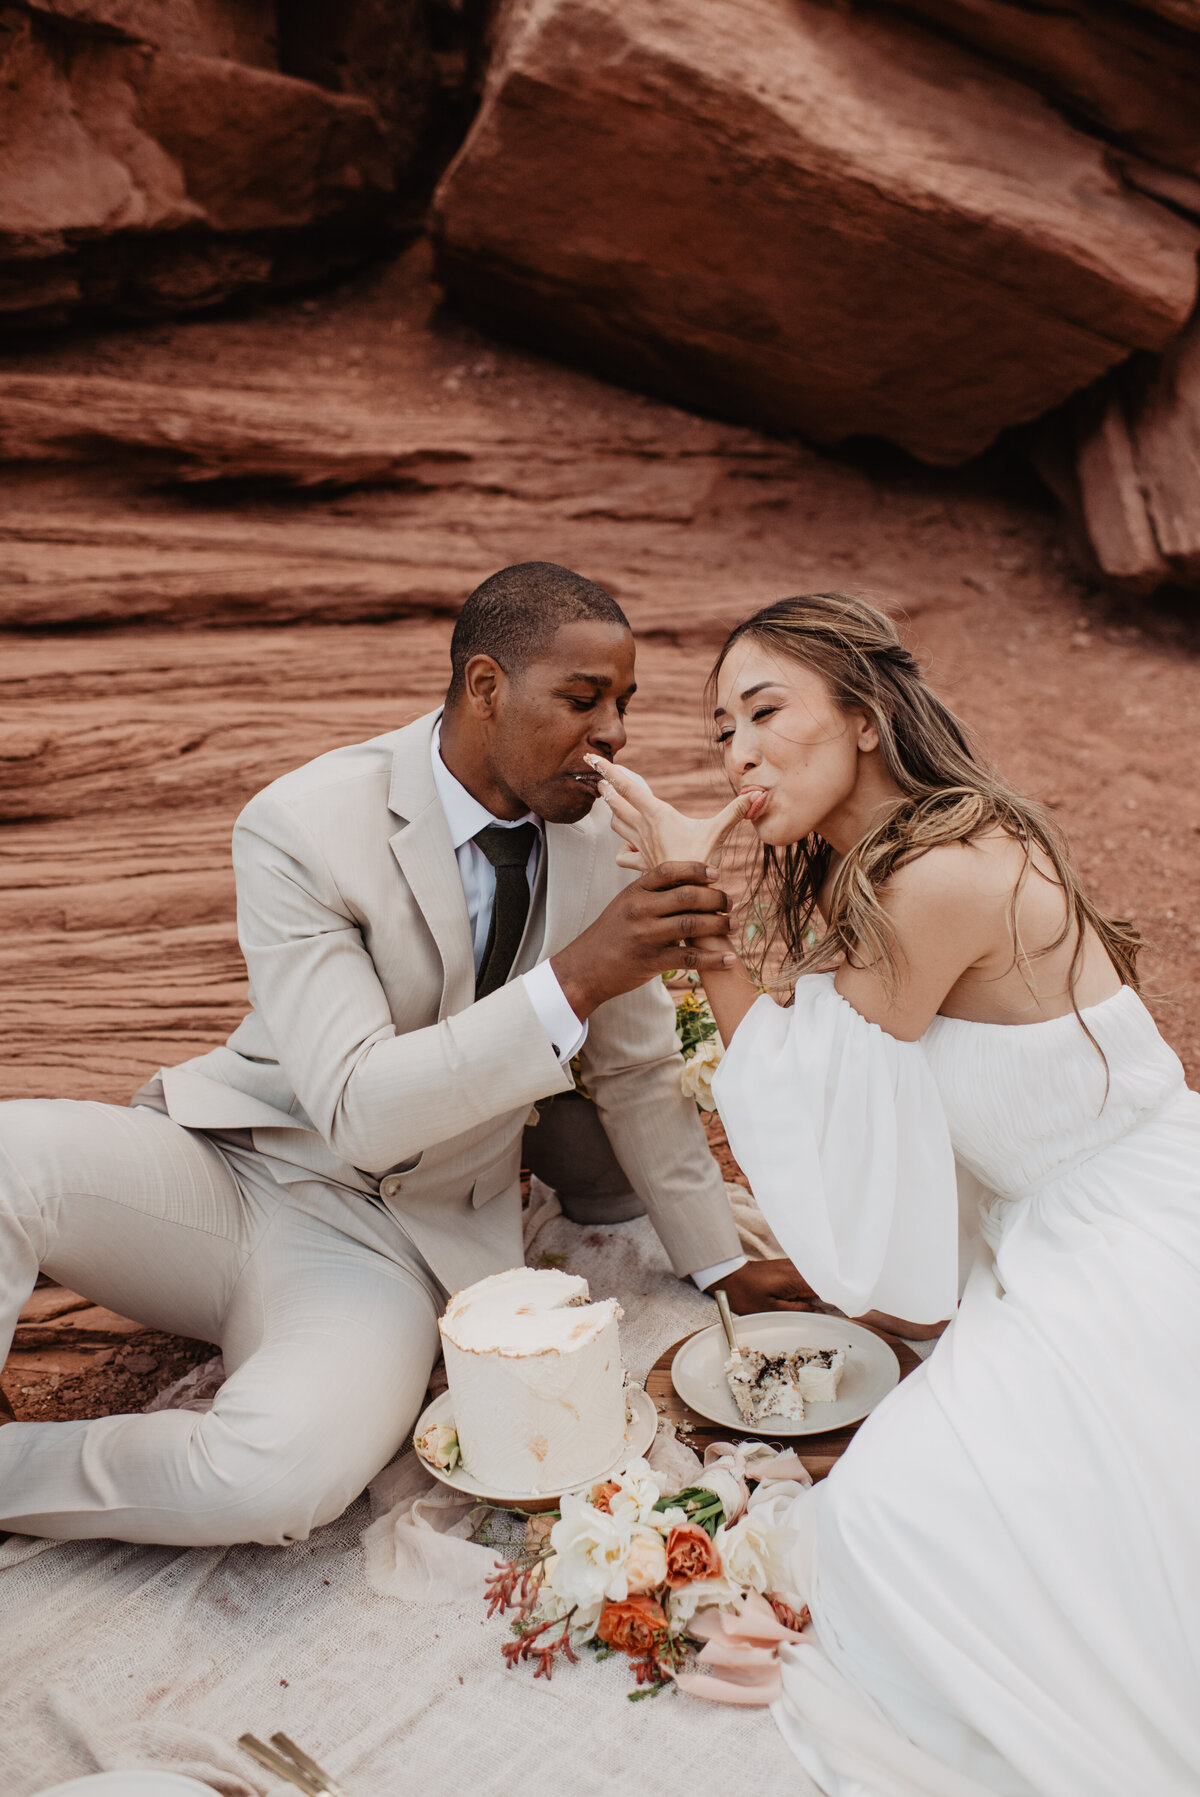 Utah Elopement Photographer captures bride and groom licking fingers